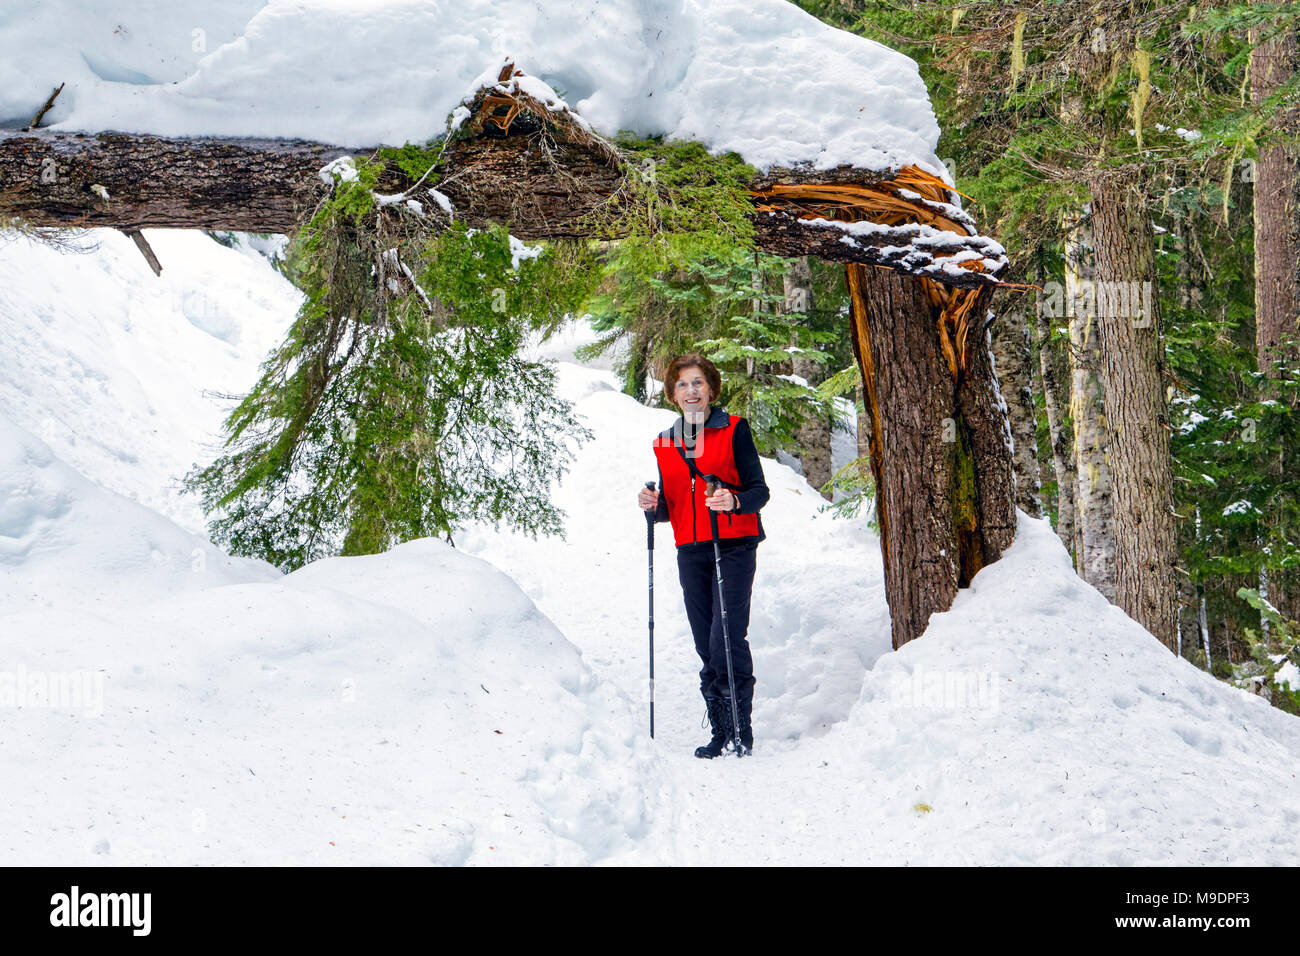 42,780.01233 70jährige Frau Wanderer wandern Schnee - Winter Forest trail abgedeckt werden, stehen unter einem Gebrochenen und gefallenen Nadelbaumbaum. Stockfoto